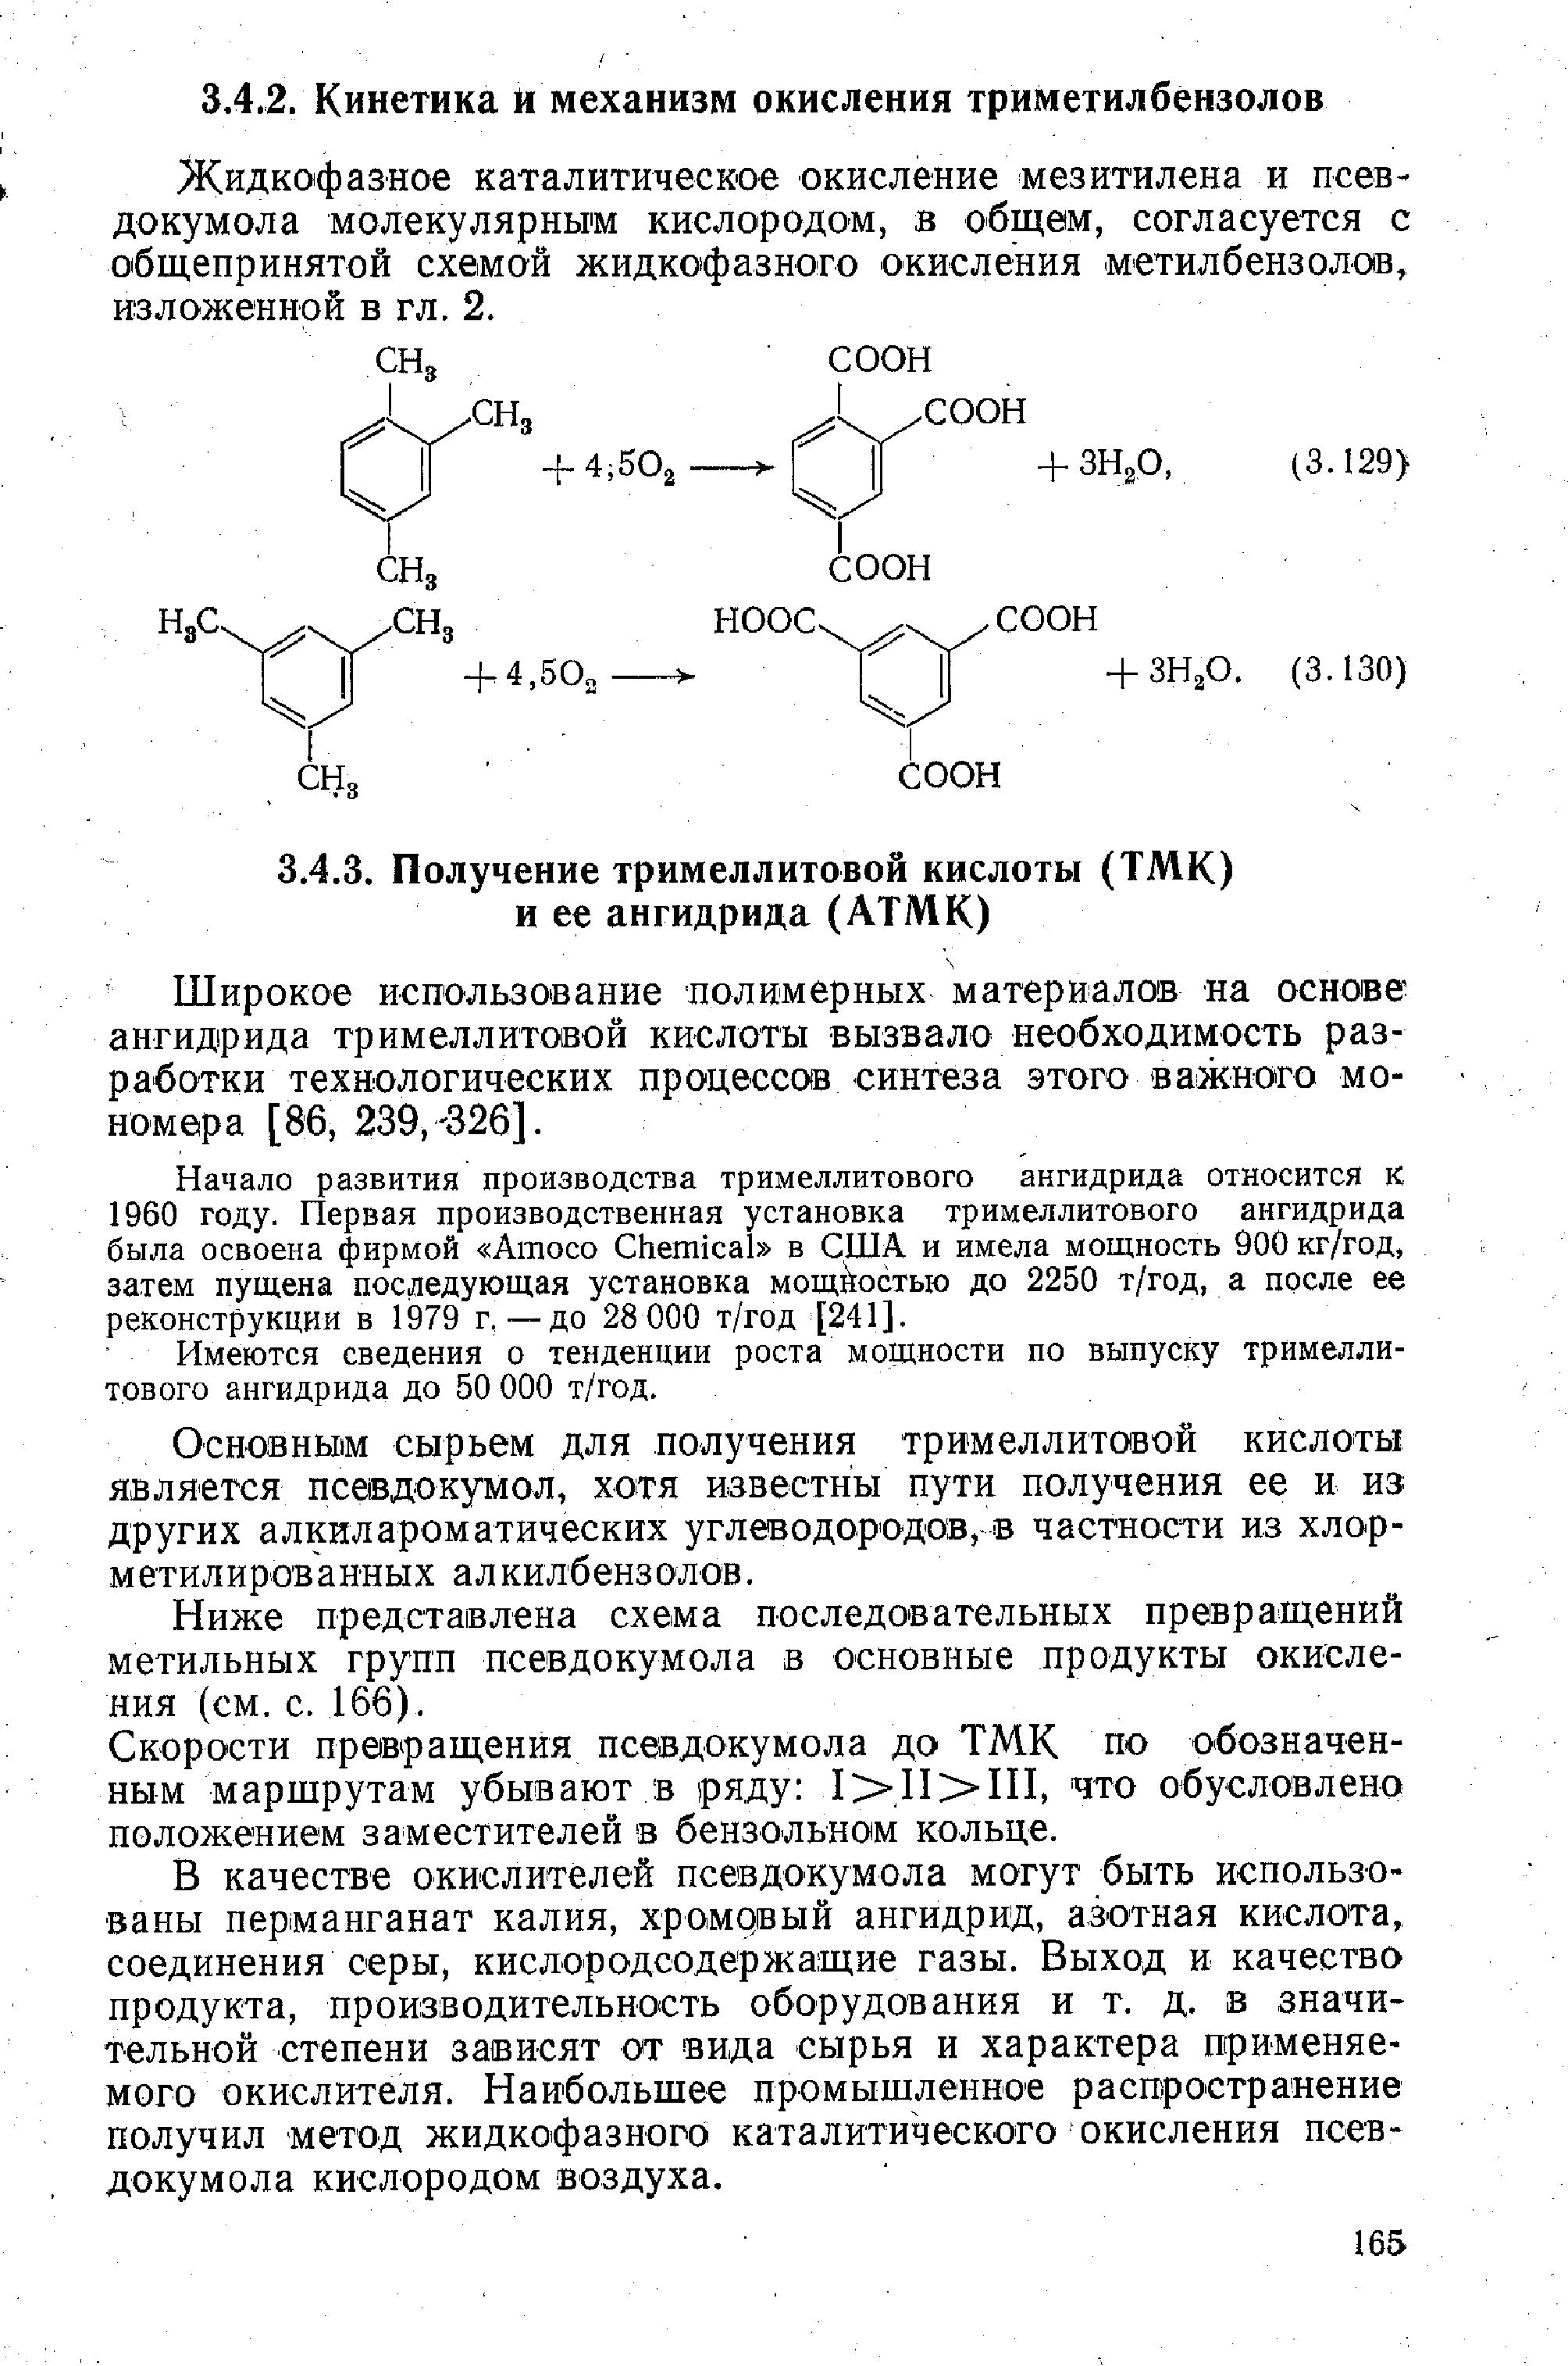 Жидкофазное каталитическое окисление мезитилена и псевдокумола молекулярным кислородом, в общем, согласуется с общепринятой схемой жидкофазного окисления метилбензолов, изложенной в гл. 2.